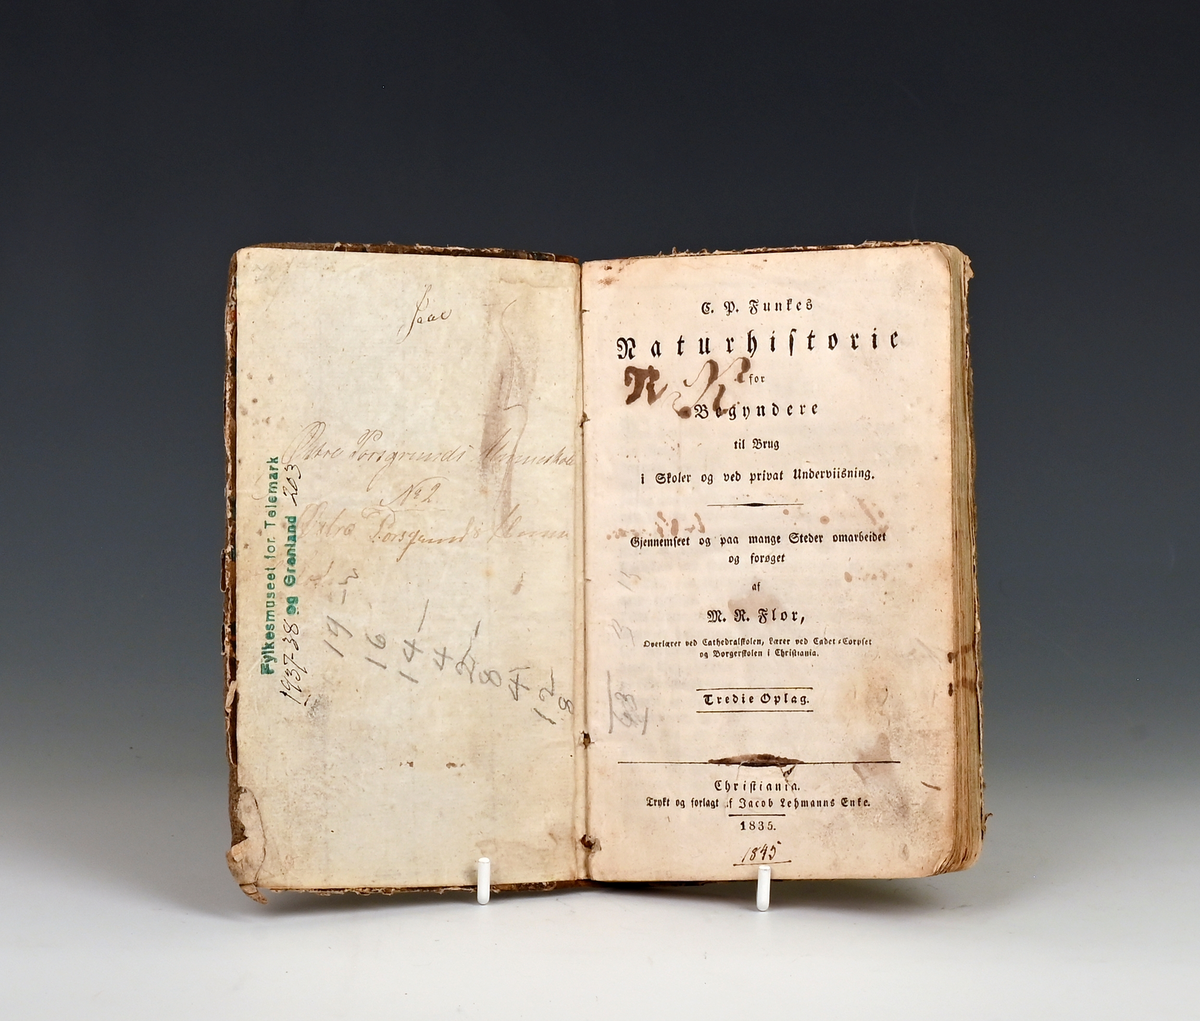 Prot: Funkes, C.P., Naturhistorie for Begyndere. Forøg af M. R. Flor. Tredie Opl. Chr.a. 1835. 2. bl. + 232 s. 8 F.